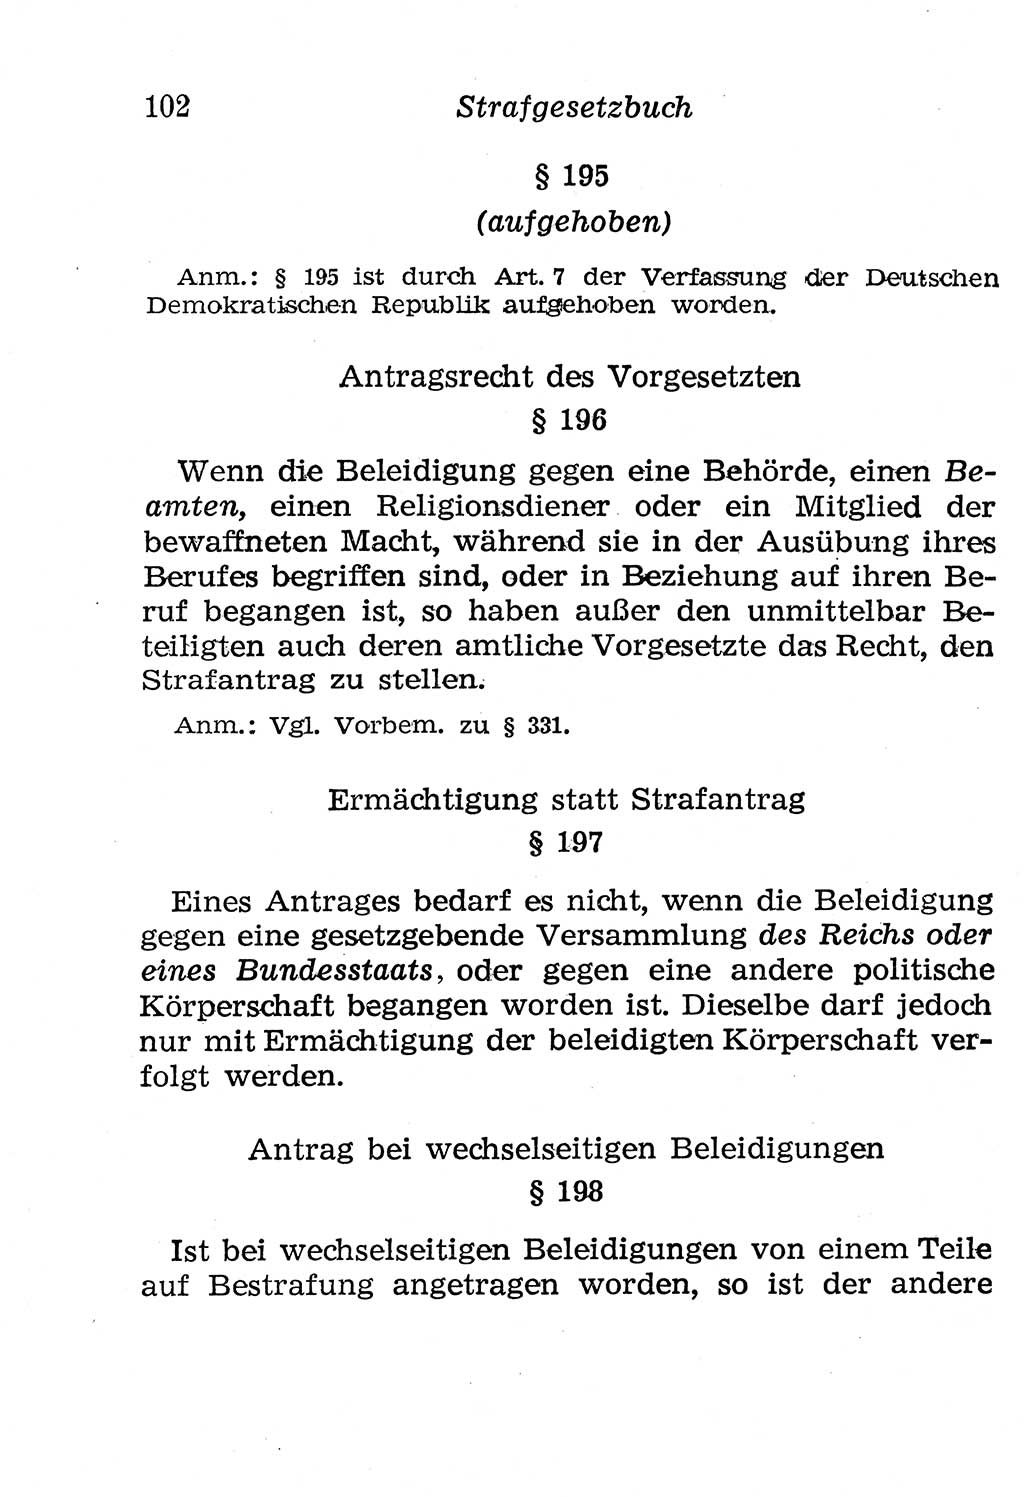 Strafgesetzbuch (StGB) und andere Strafgesetze [Deutsche Demokratische Republik (DDR)] 1958, Seite 102 (StGB Strafges. DDR 1958, S. 102)